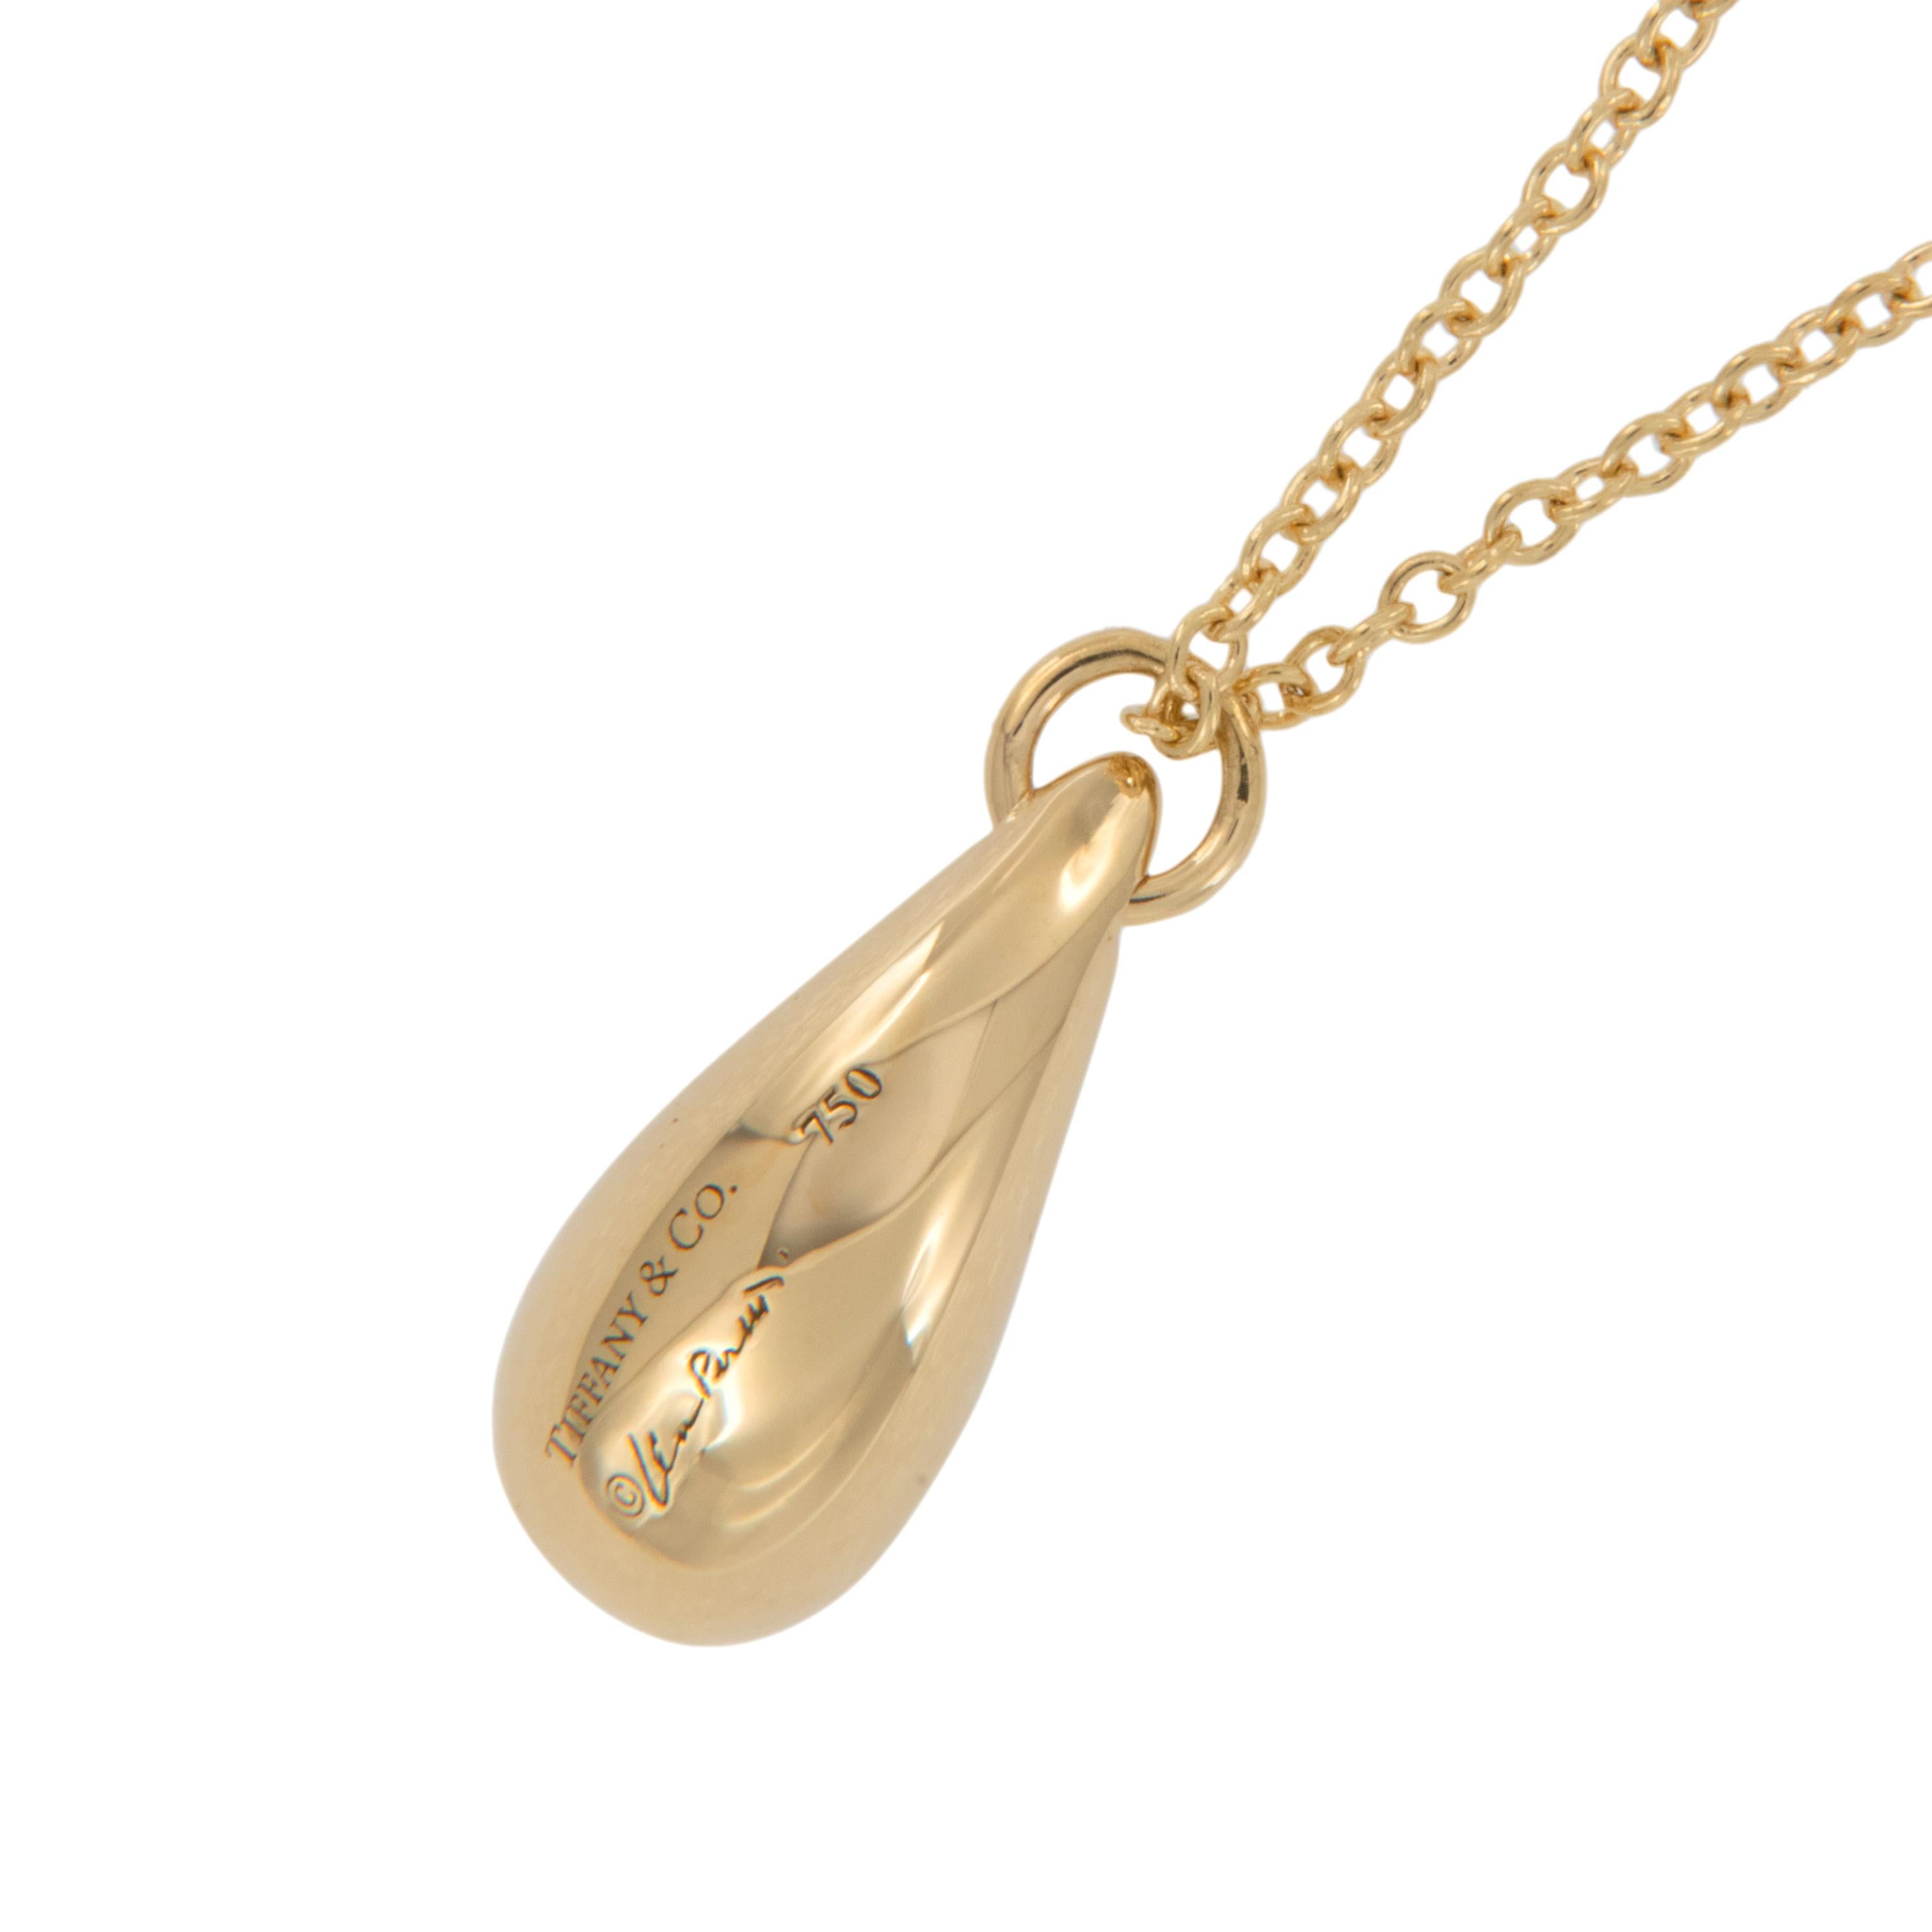 Tout le monde devrait posséder un objet emblématique, voici votre chance ! Ce collier en or jaune 18 carats Elsa Peretti for Tiffany & Co 